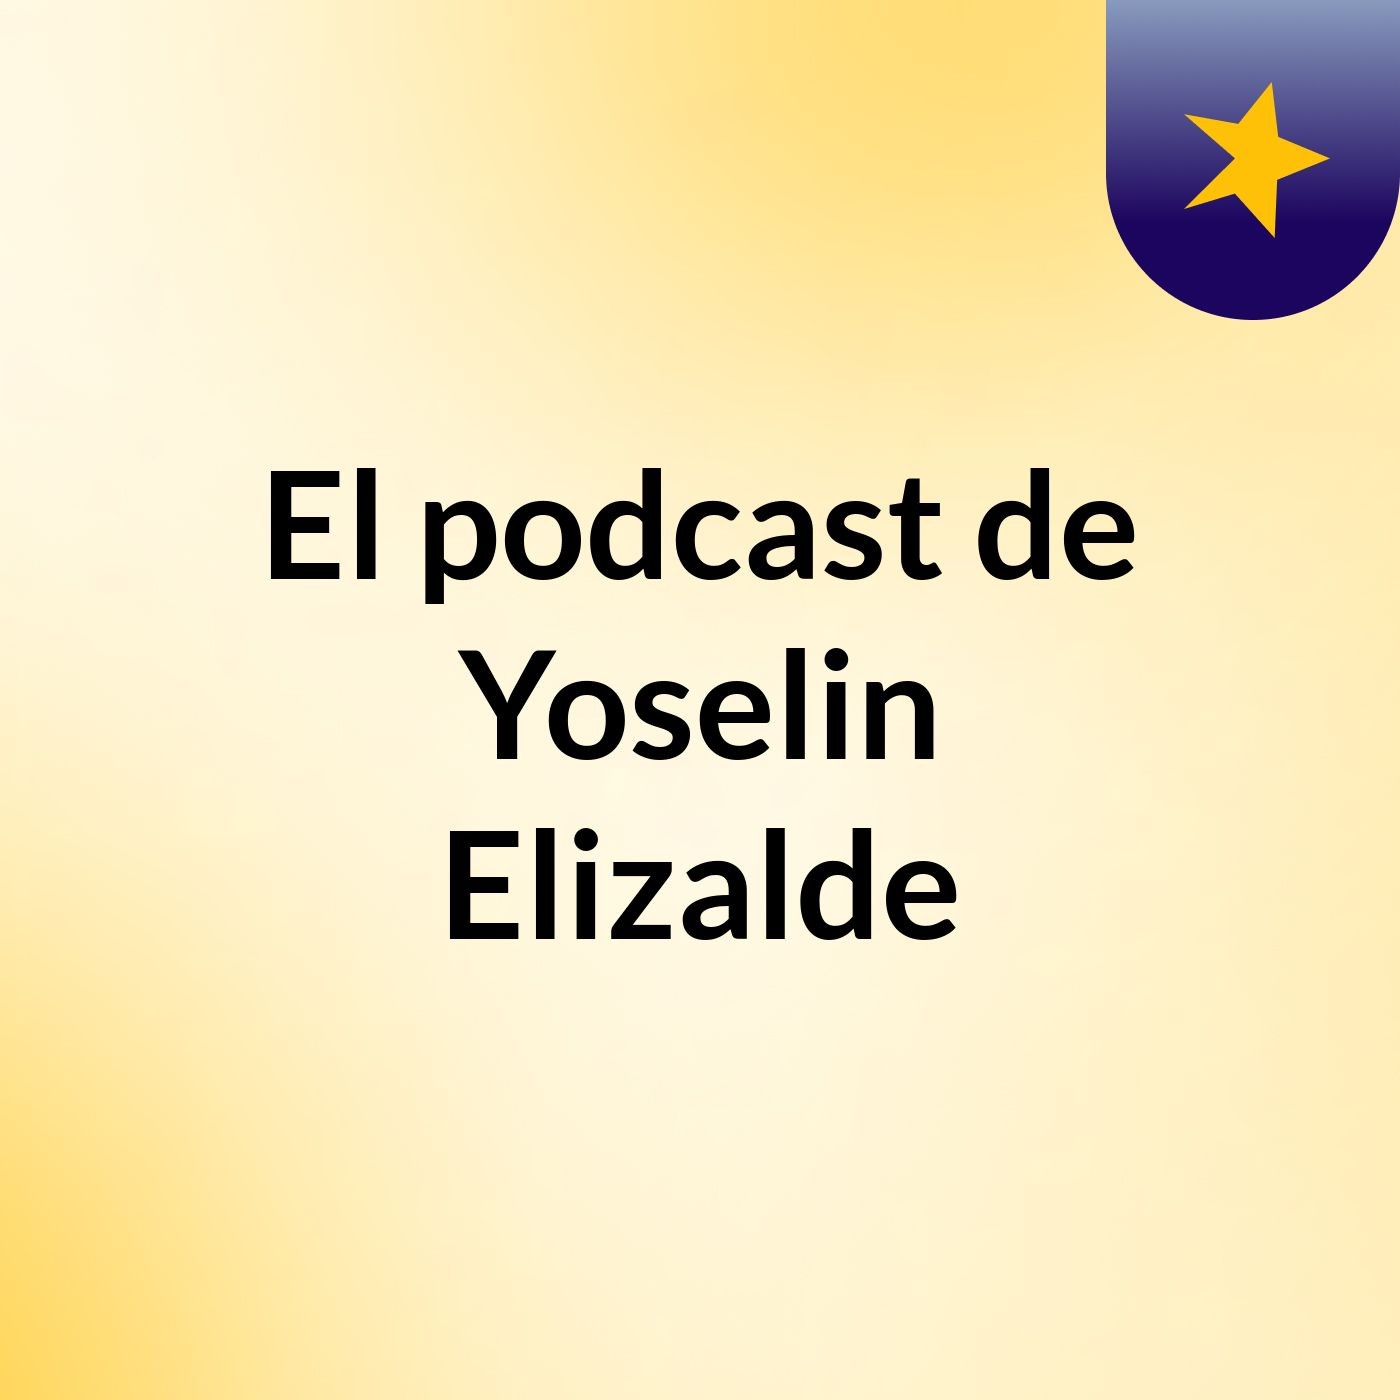 El podcast de Yoselin Elizalde